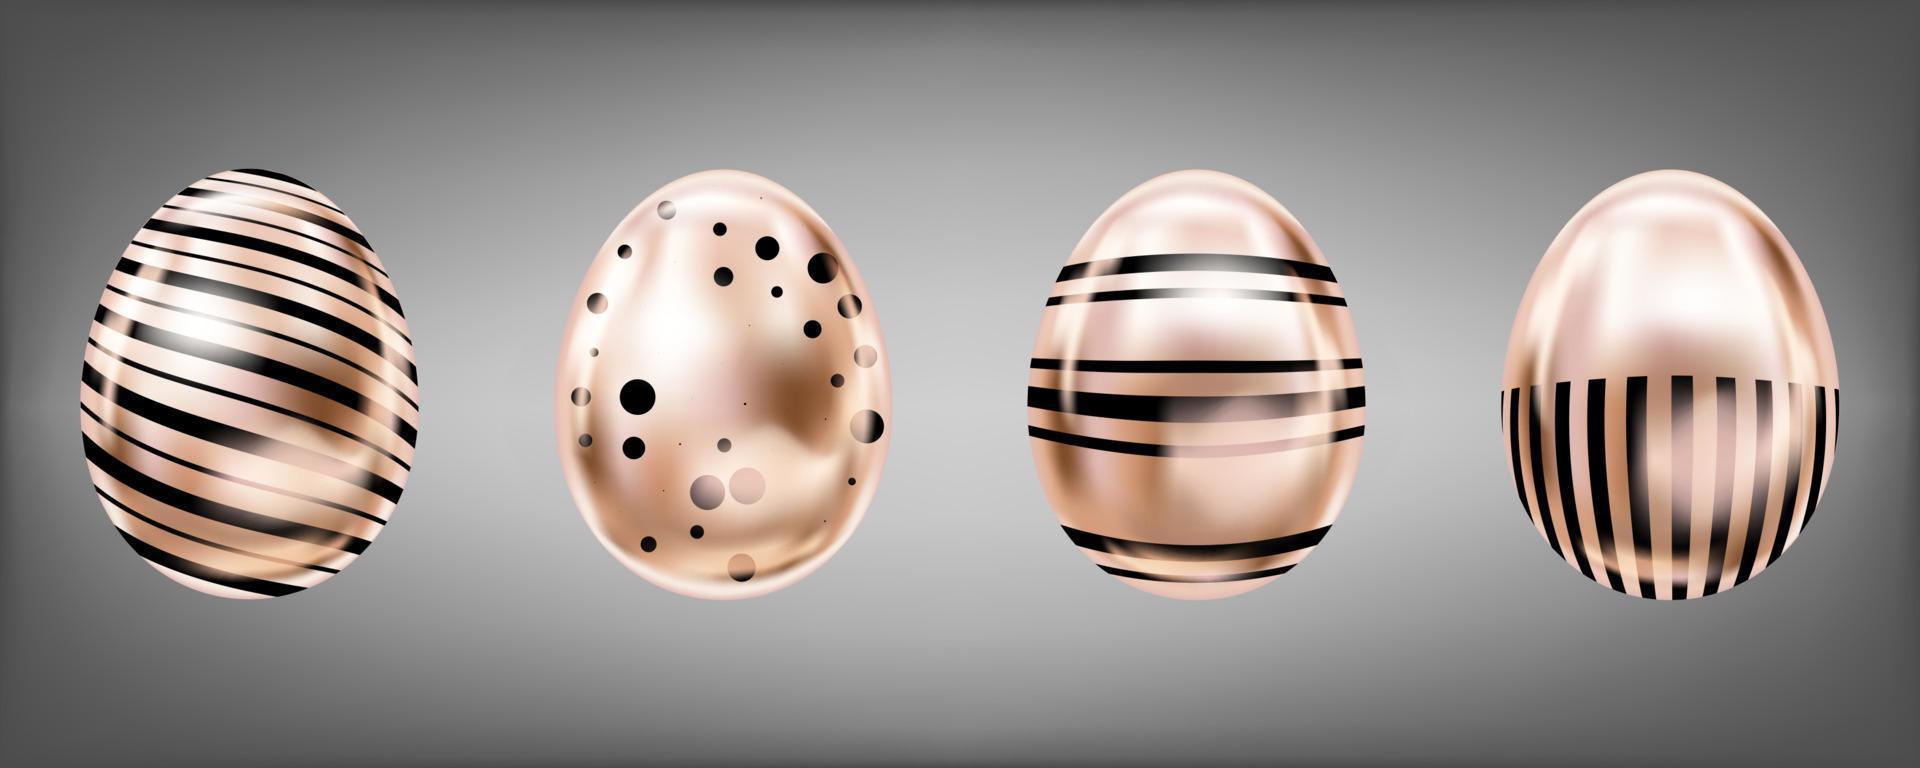 fyra ögonkast metalliska ägg i rosa färg med svarta prickar och ränder. isolerade föremål för påskdekoration vektor